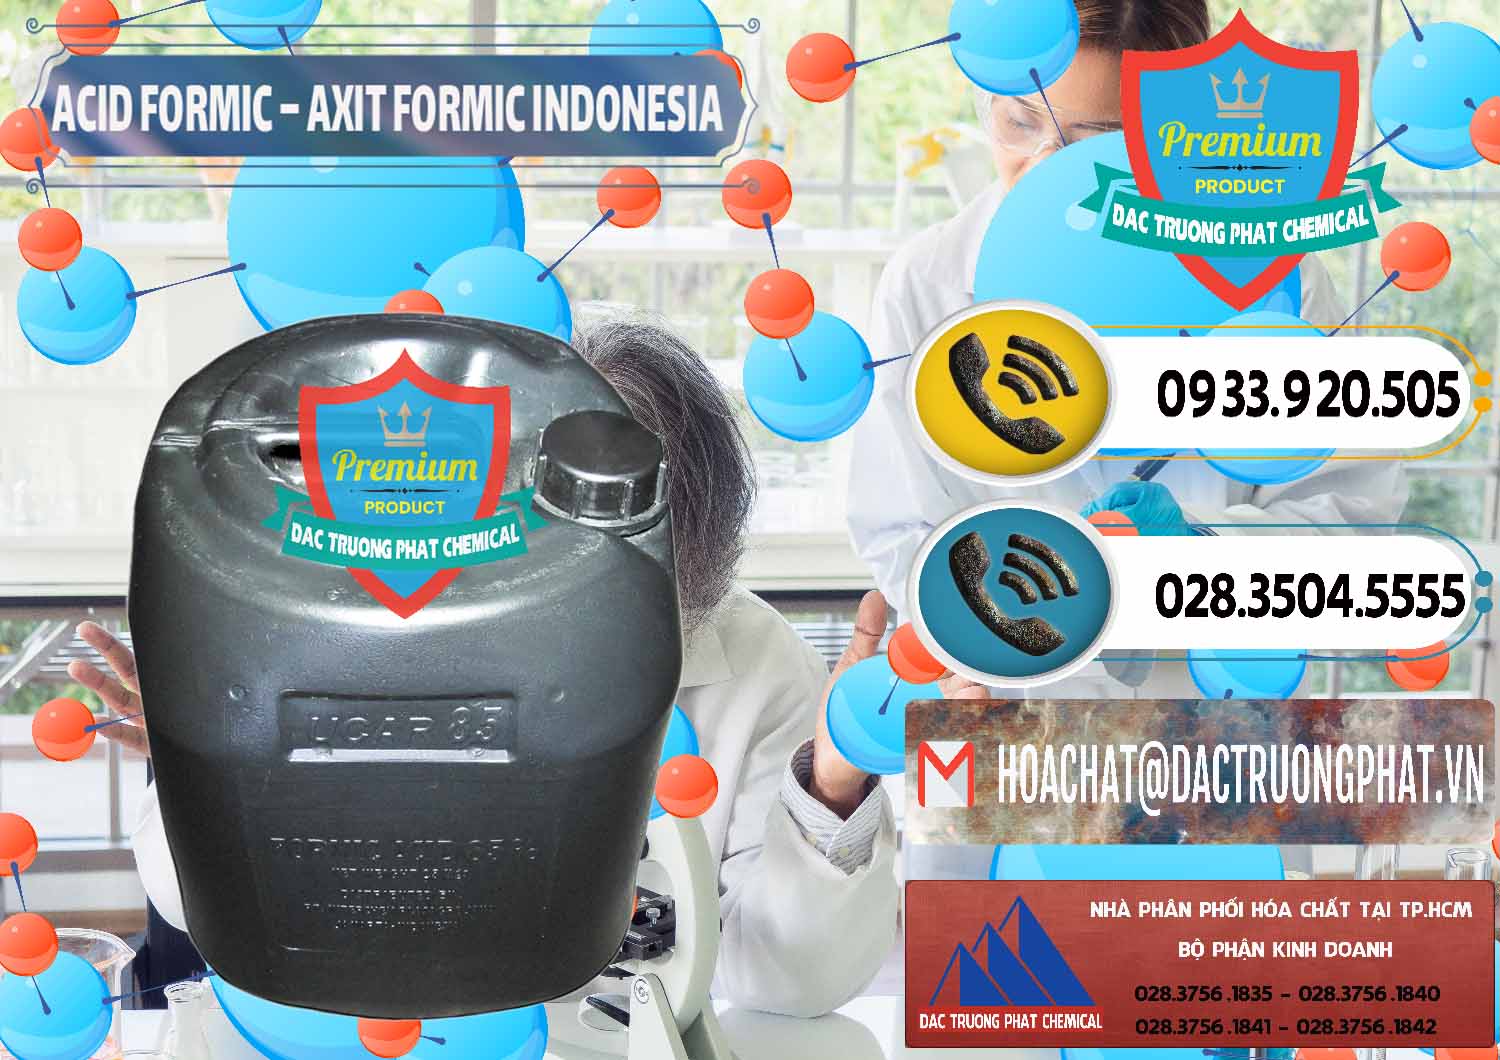 Nơi chuyên kinh doanh - bán Acid Formic - Axit Formic Indonesia - 0026 - Đơn vị kinh doanh _ phân phối hóa chất tại TP.HCM - hoachatdetnhuom.vn